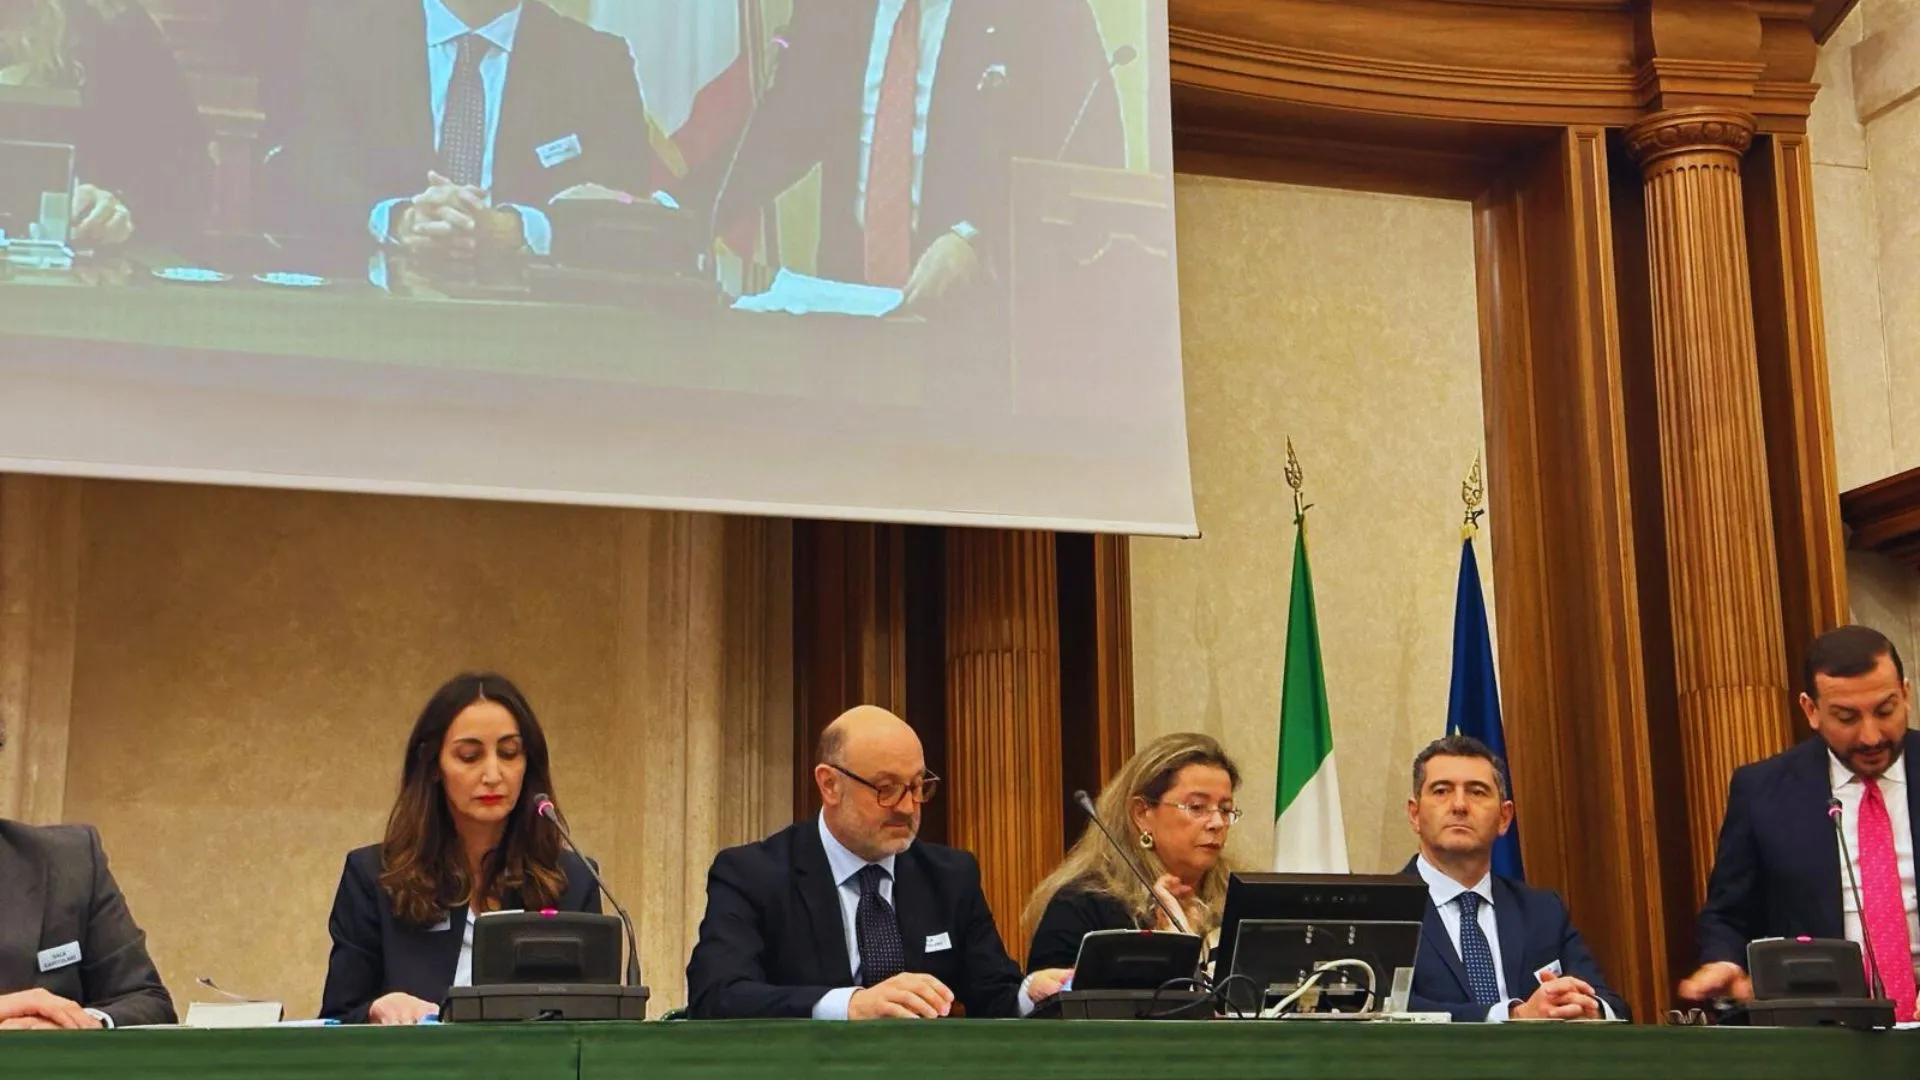 senato Associazione Consumatori Italiani il team